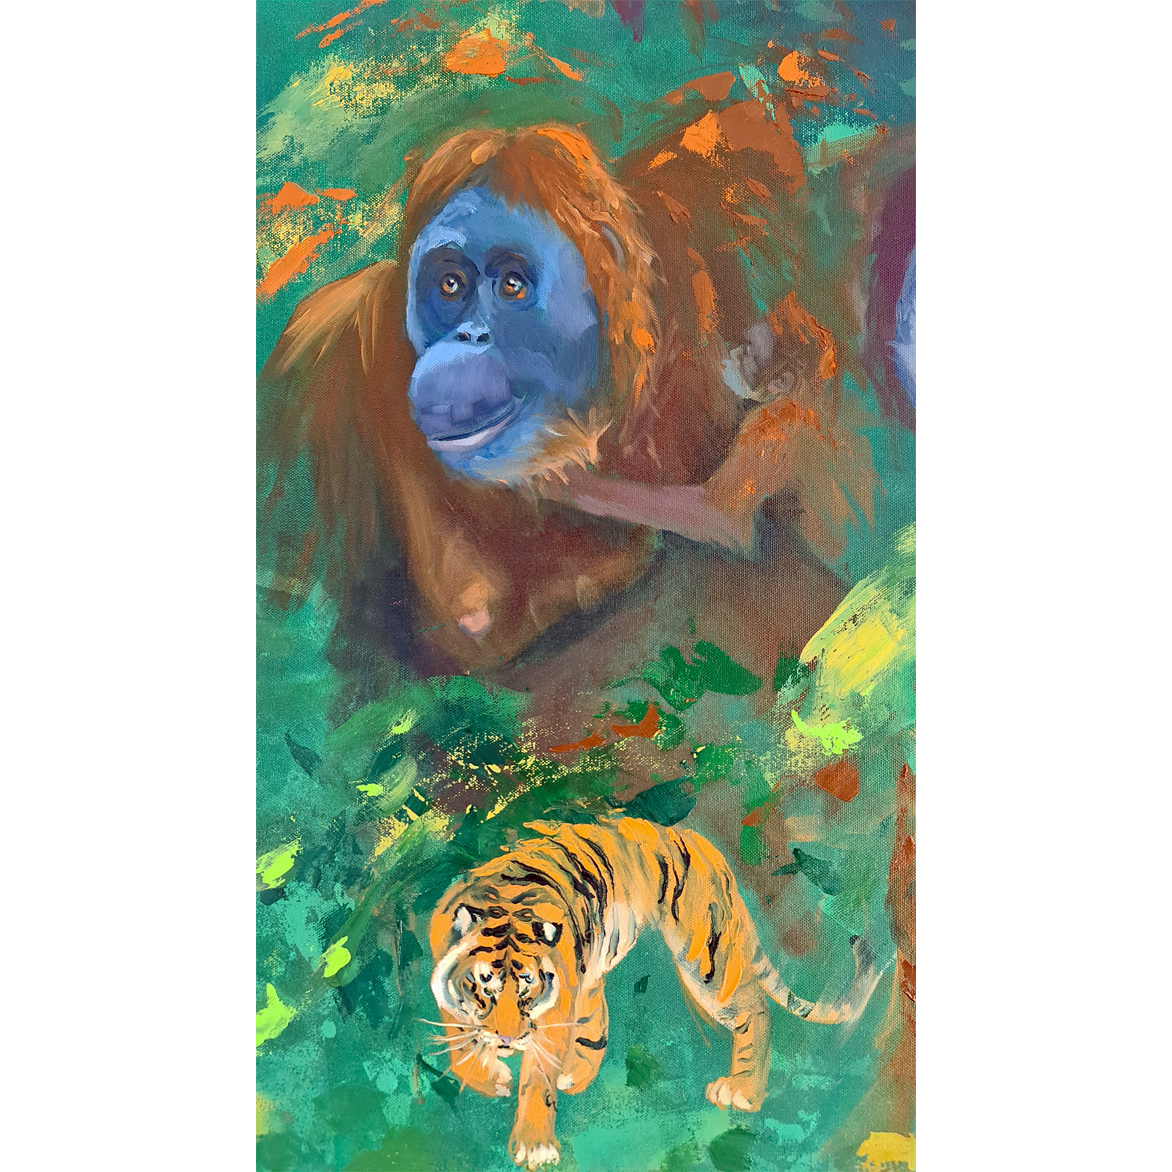 Sumatran Wildlife, oil painting